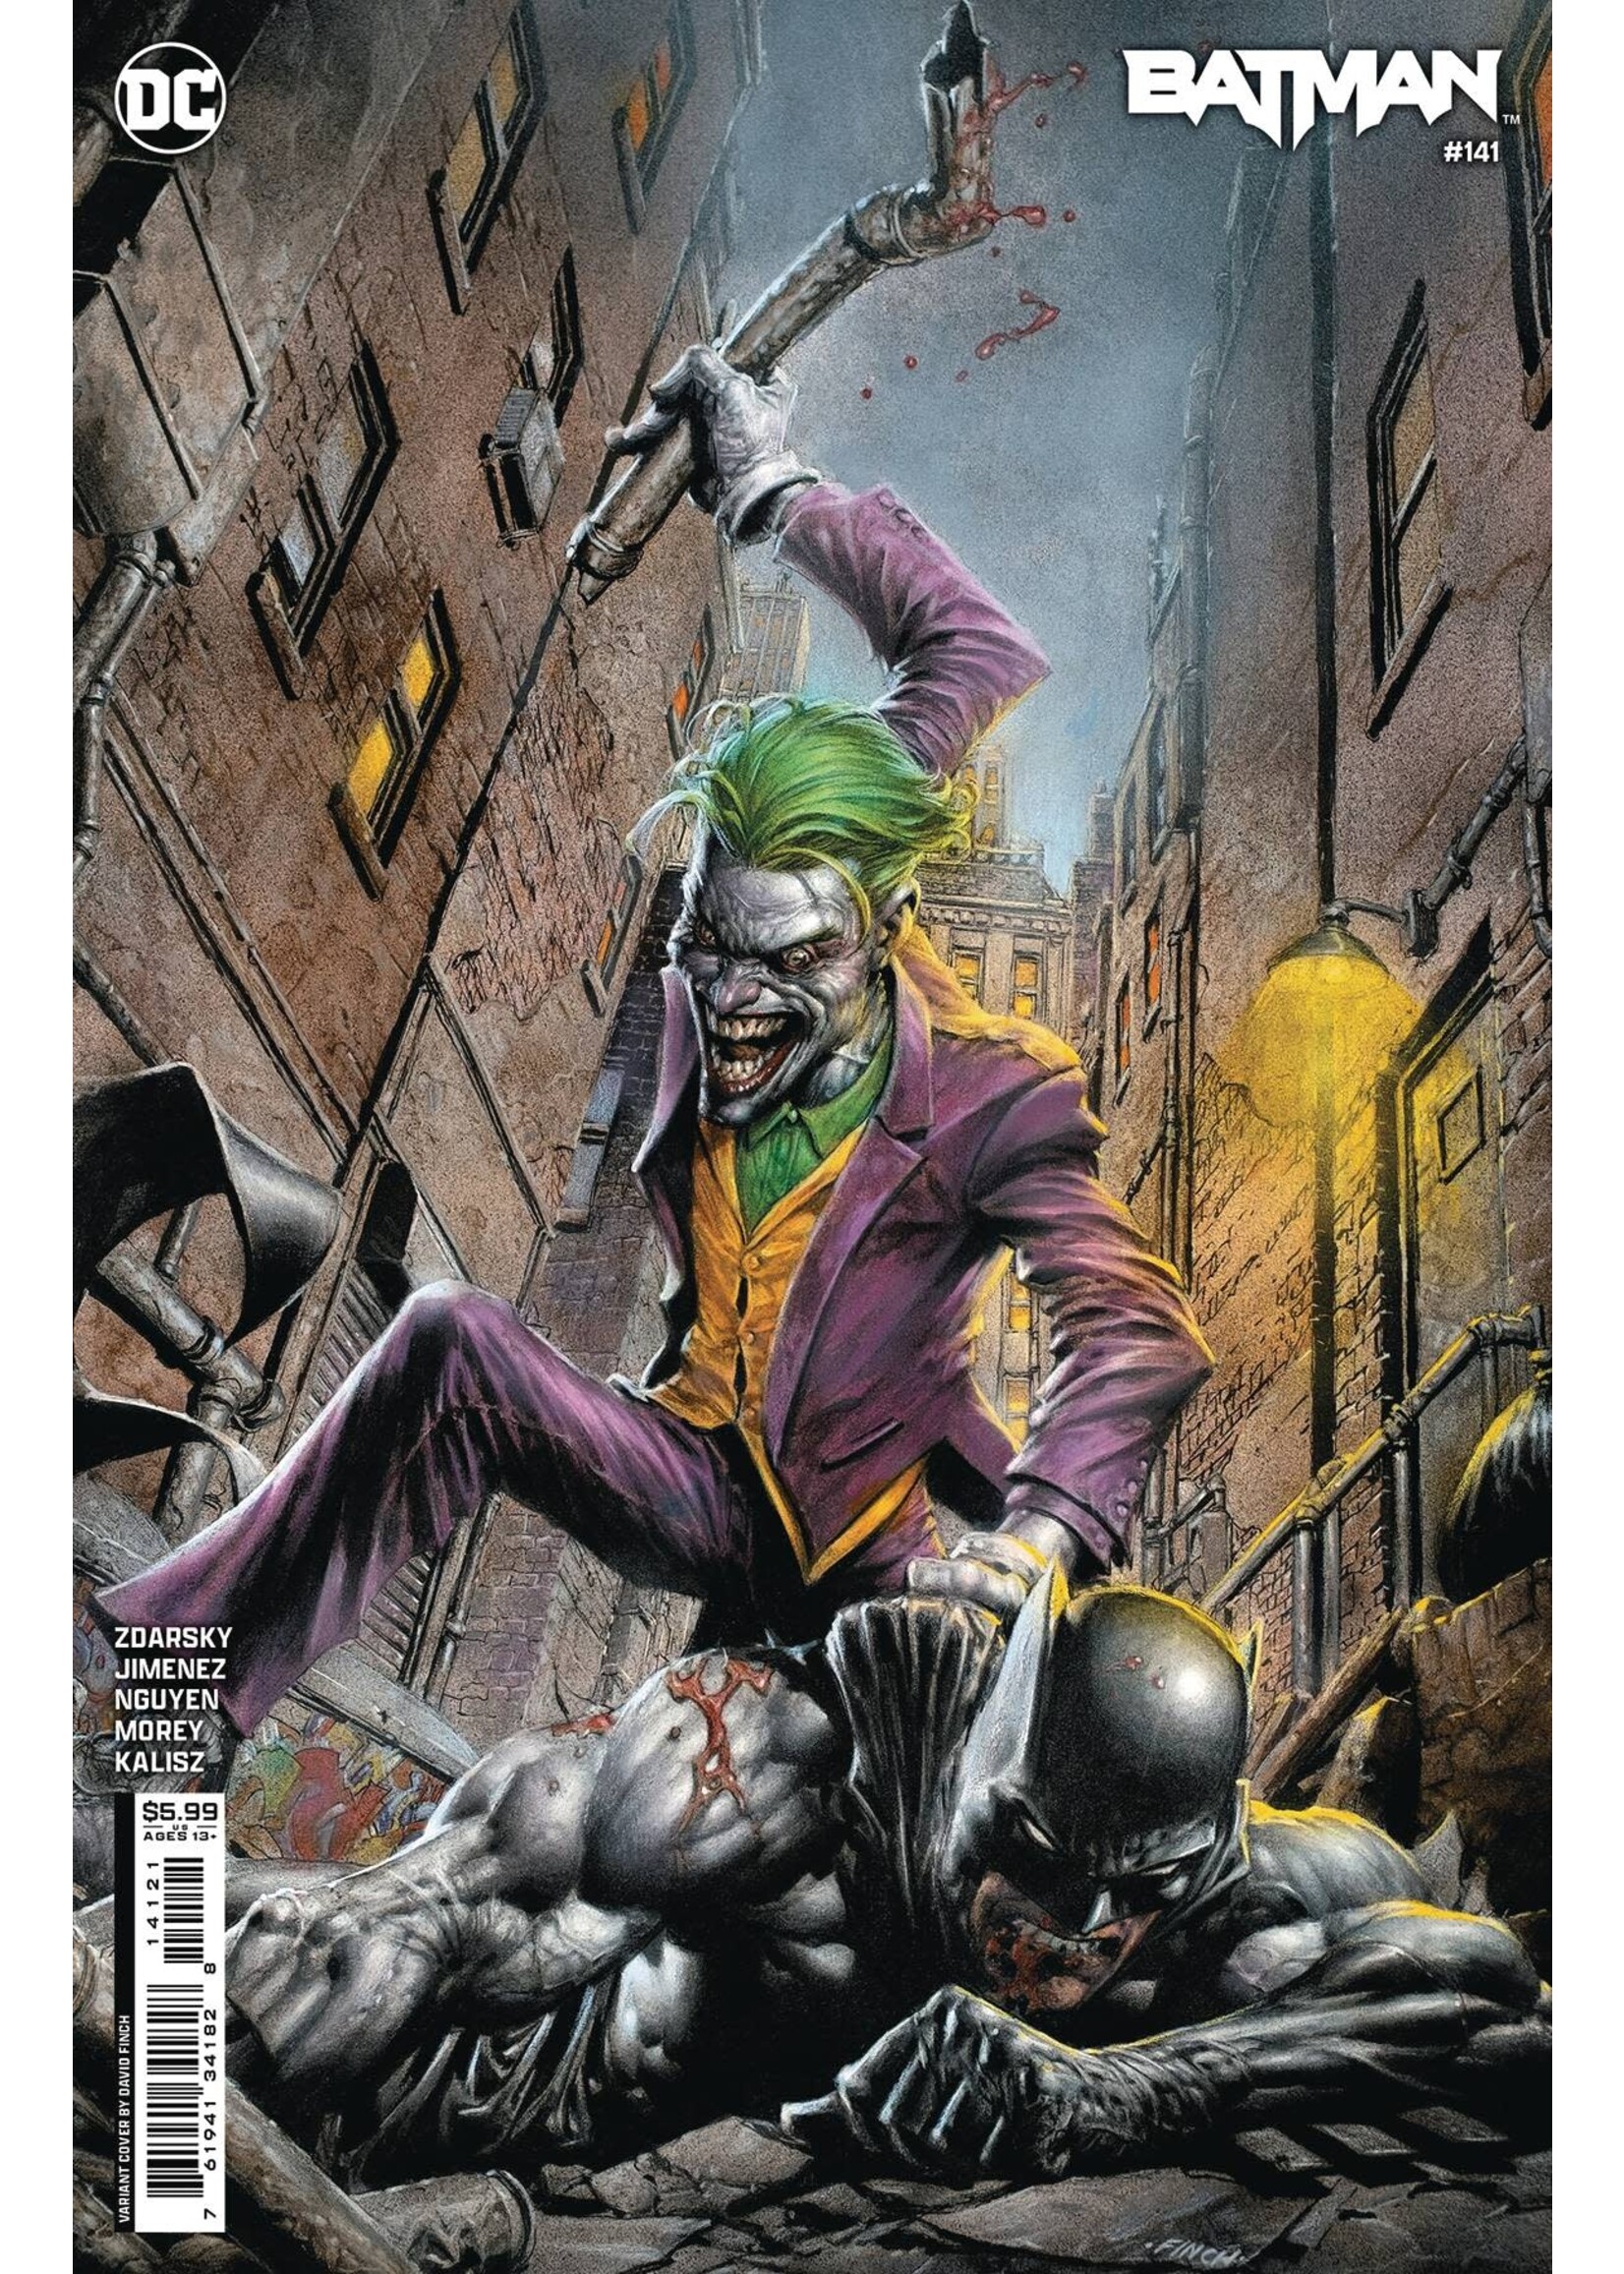 DC COMICS BATMAN #141 FINCH